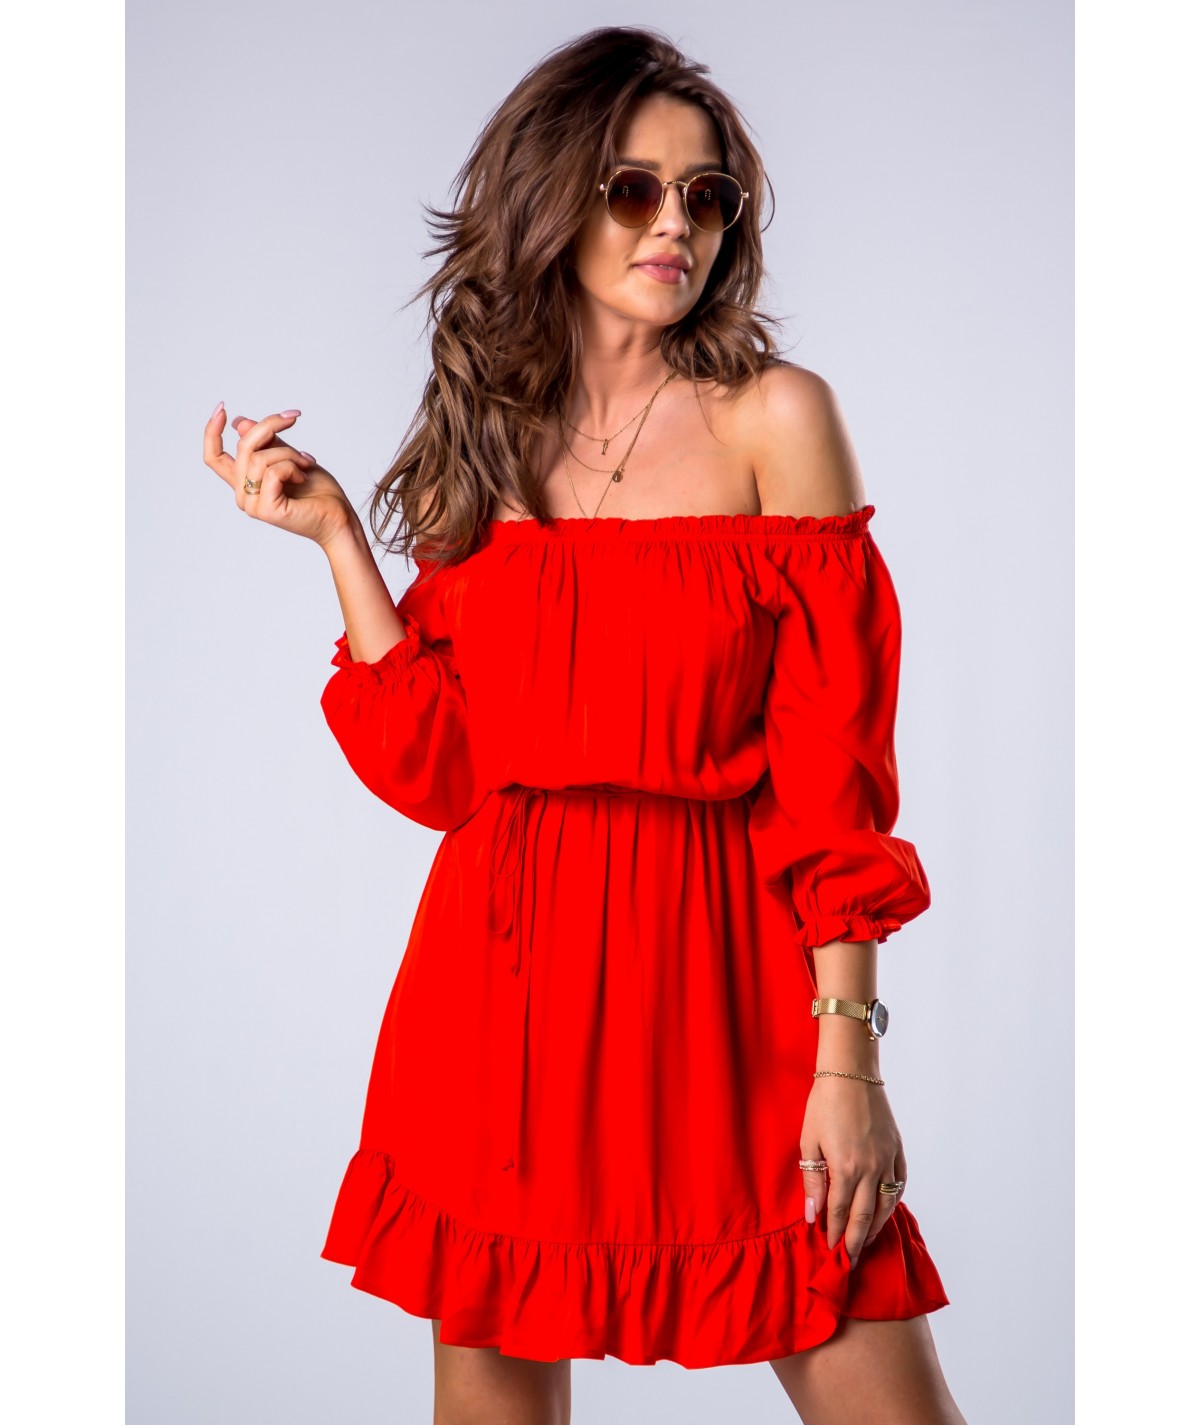 czerwona hiszpanka sukienka merribel